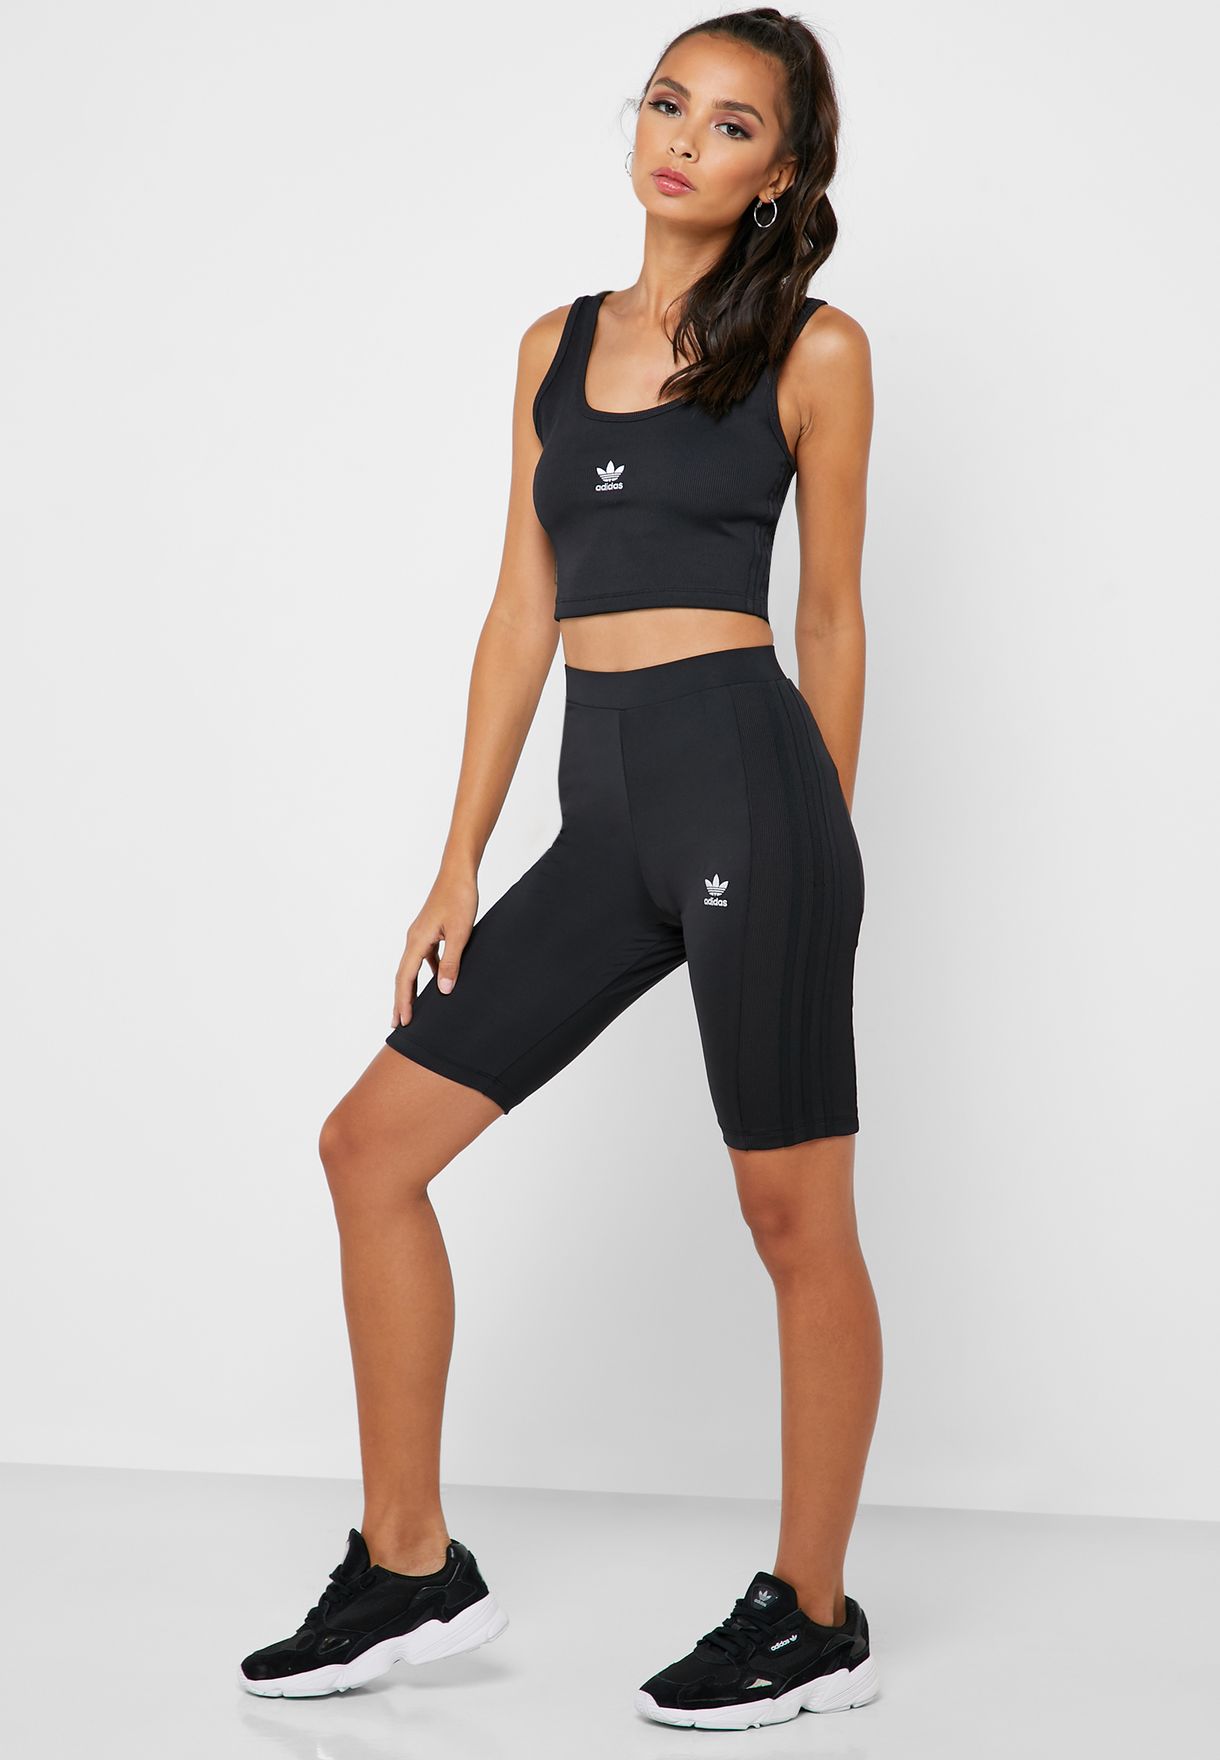 womens black adidas cycling shorts